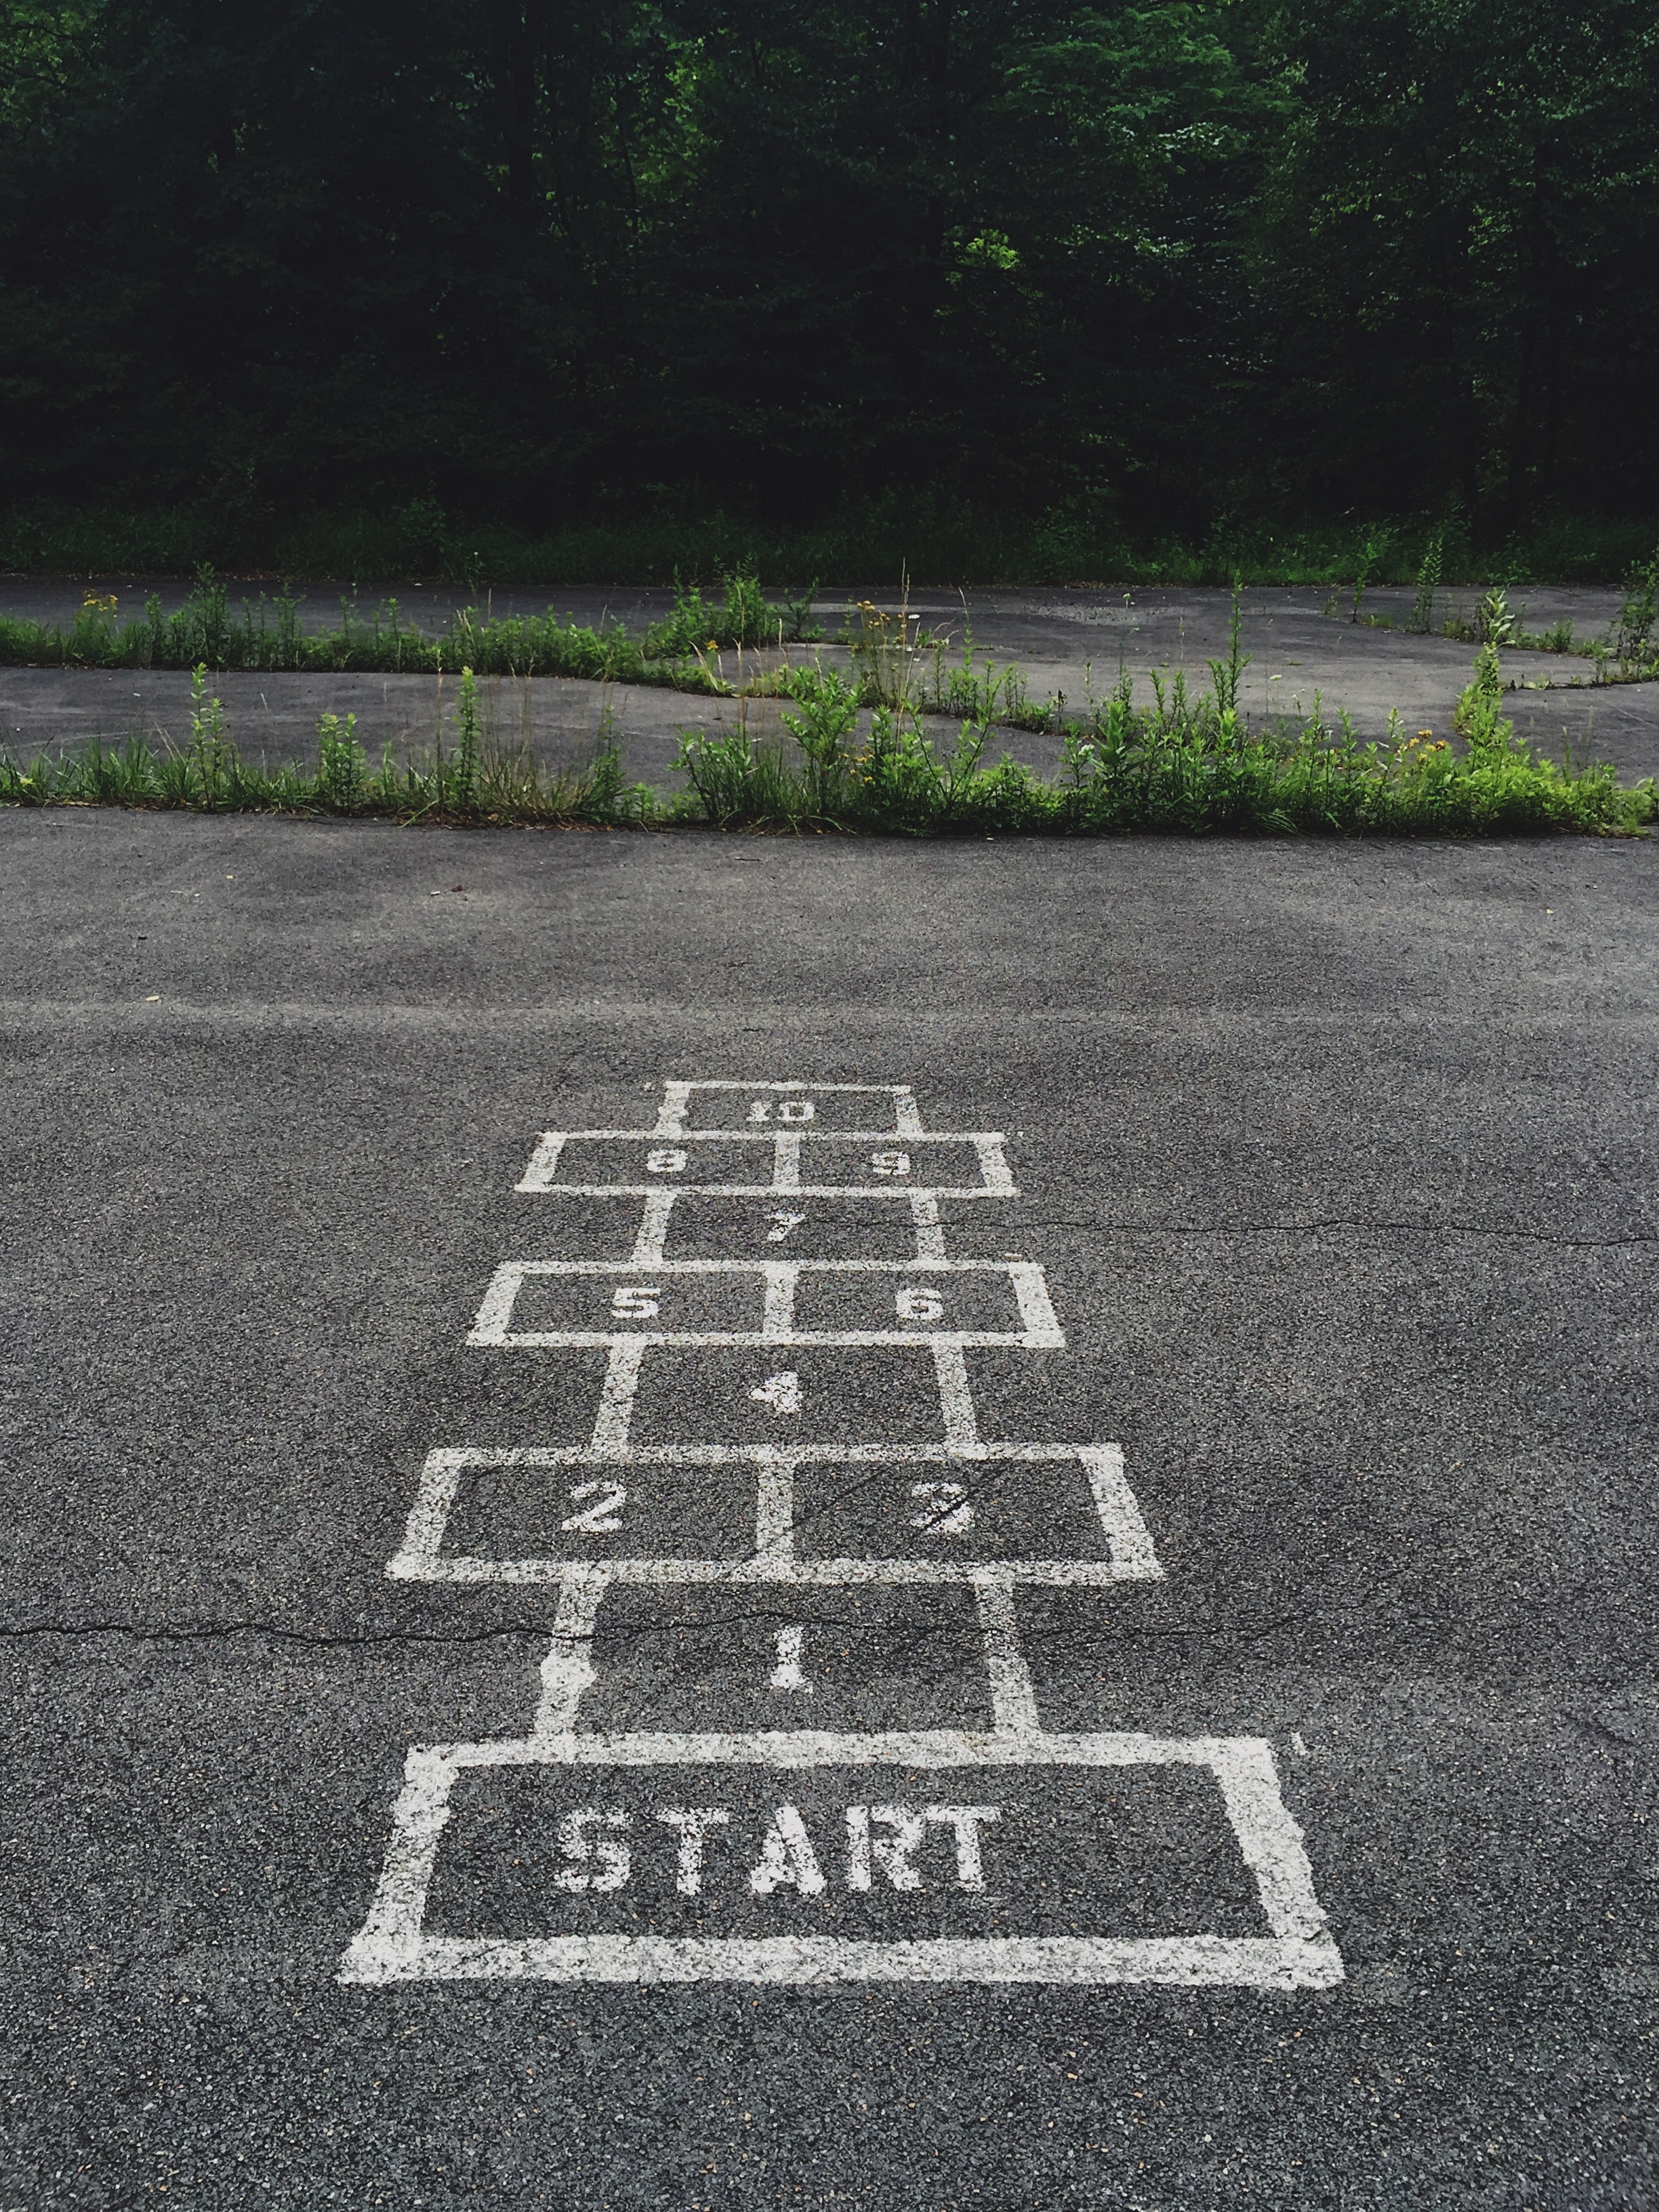 Une grille de marelle peinte sur de l'asphalte avec le mot « Start » peint sur le premier bloc.